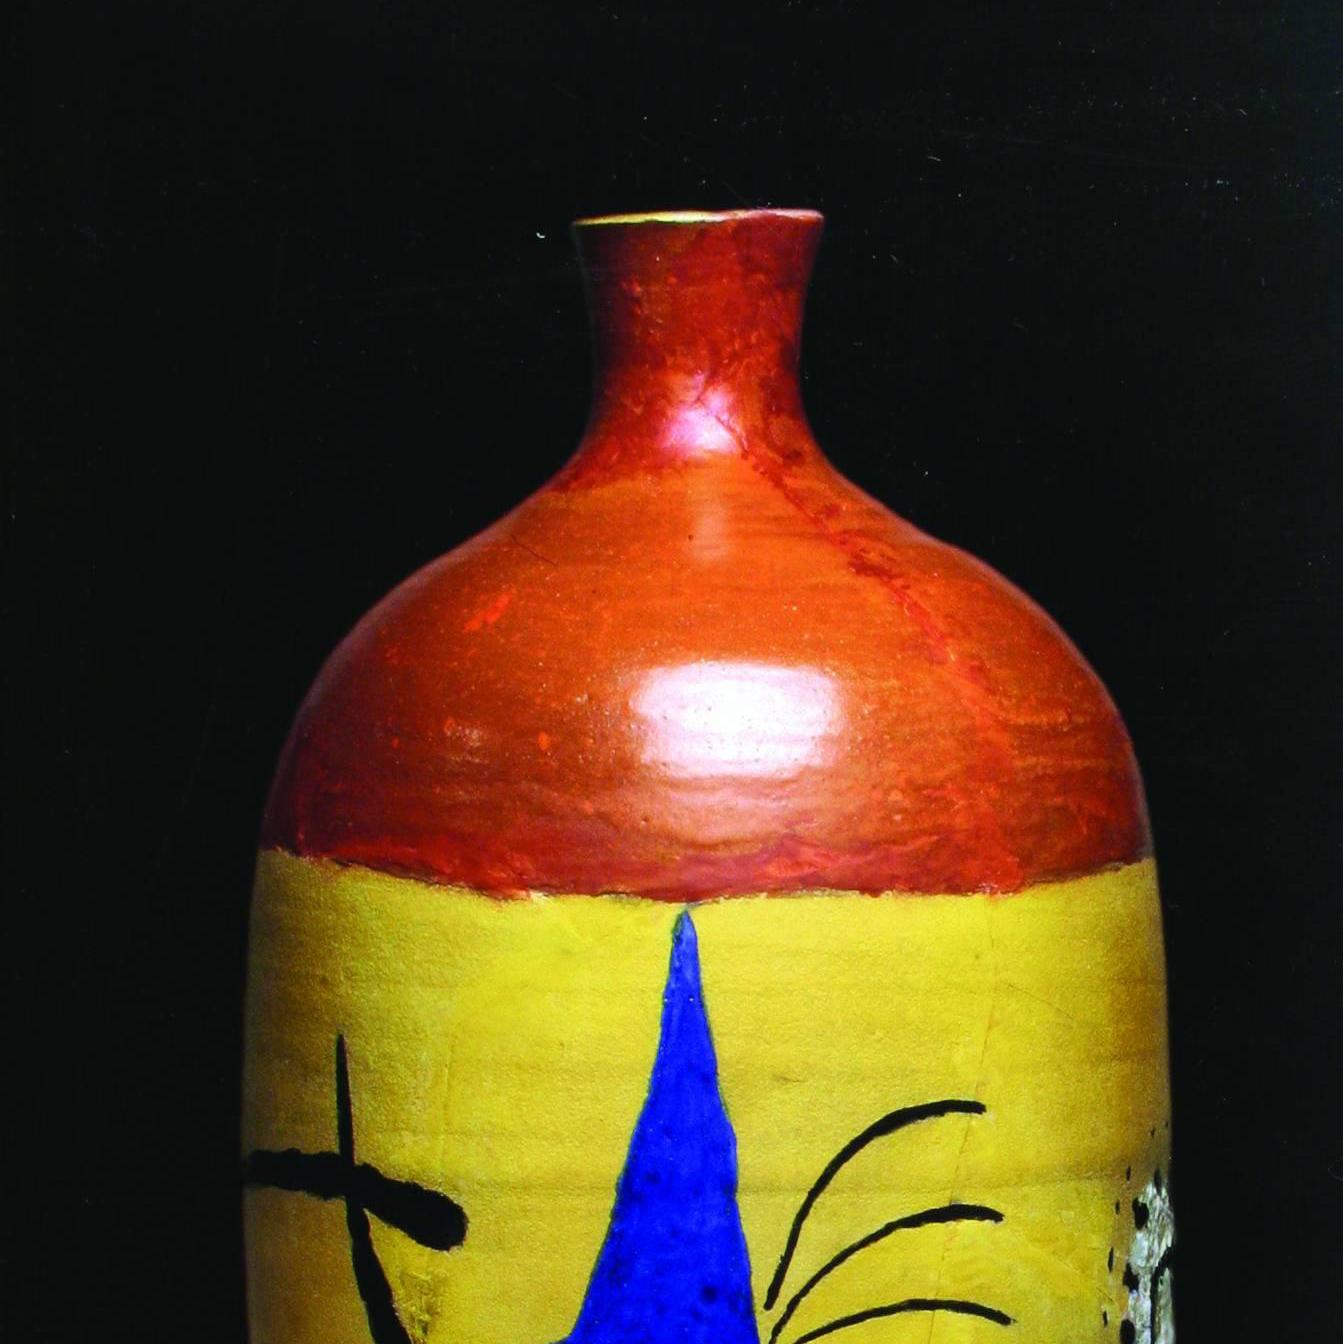  JOAN MIRO / JOSEP LLORENS ARTIGAS Ceramics. Catalogue raisonné 1941-1981. - Abstract Art by (after) Joan Miró